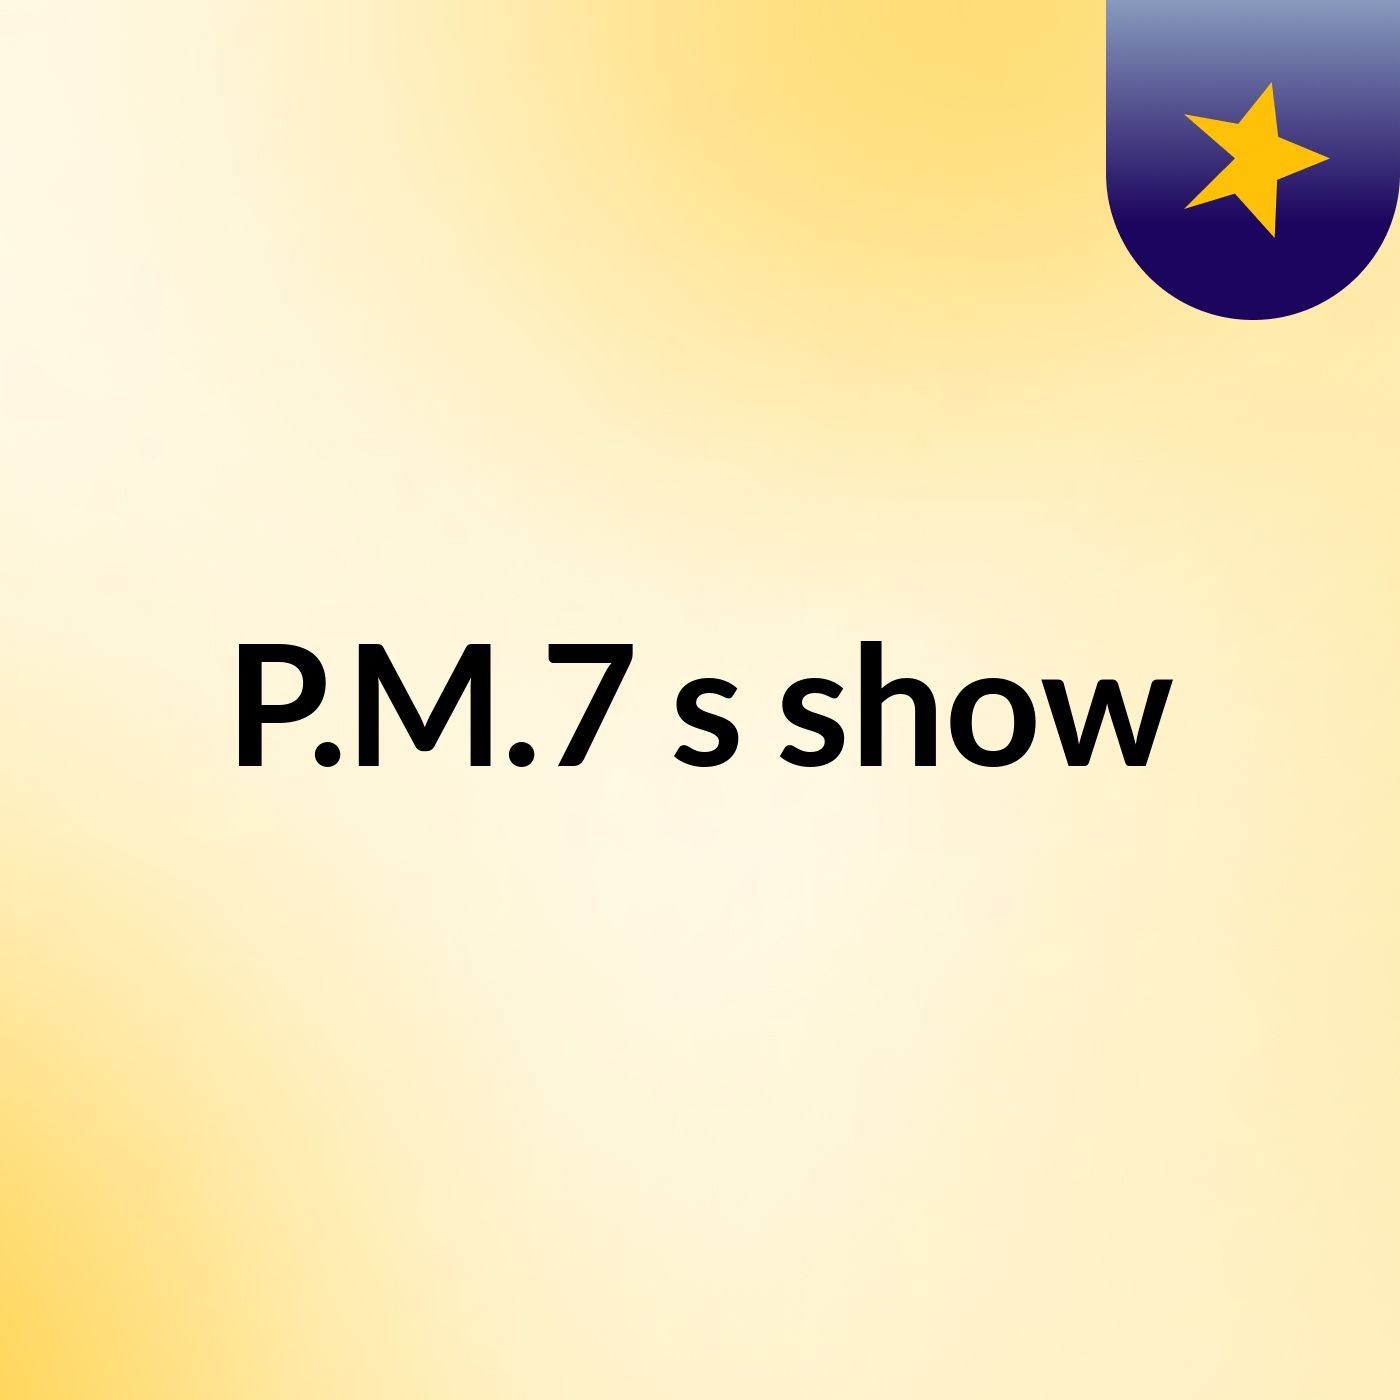 P.M.7's show